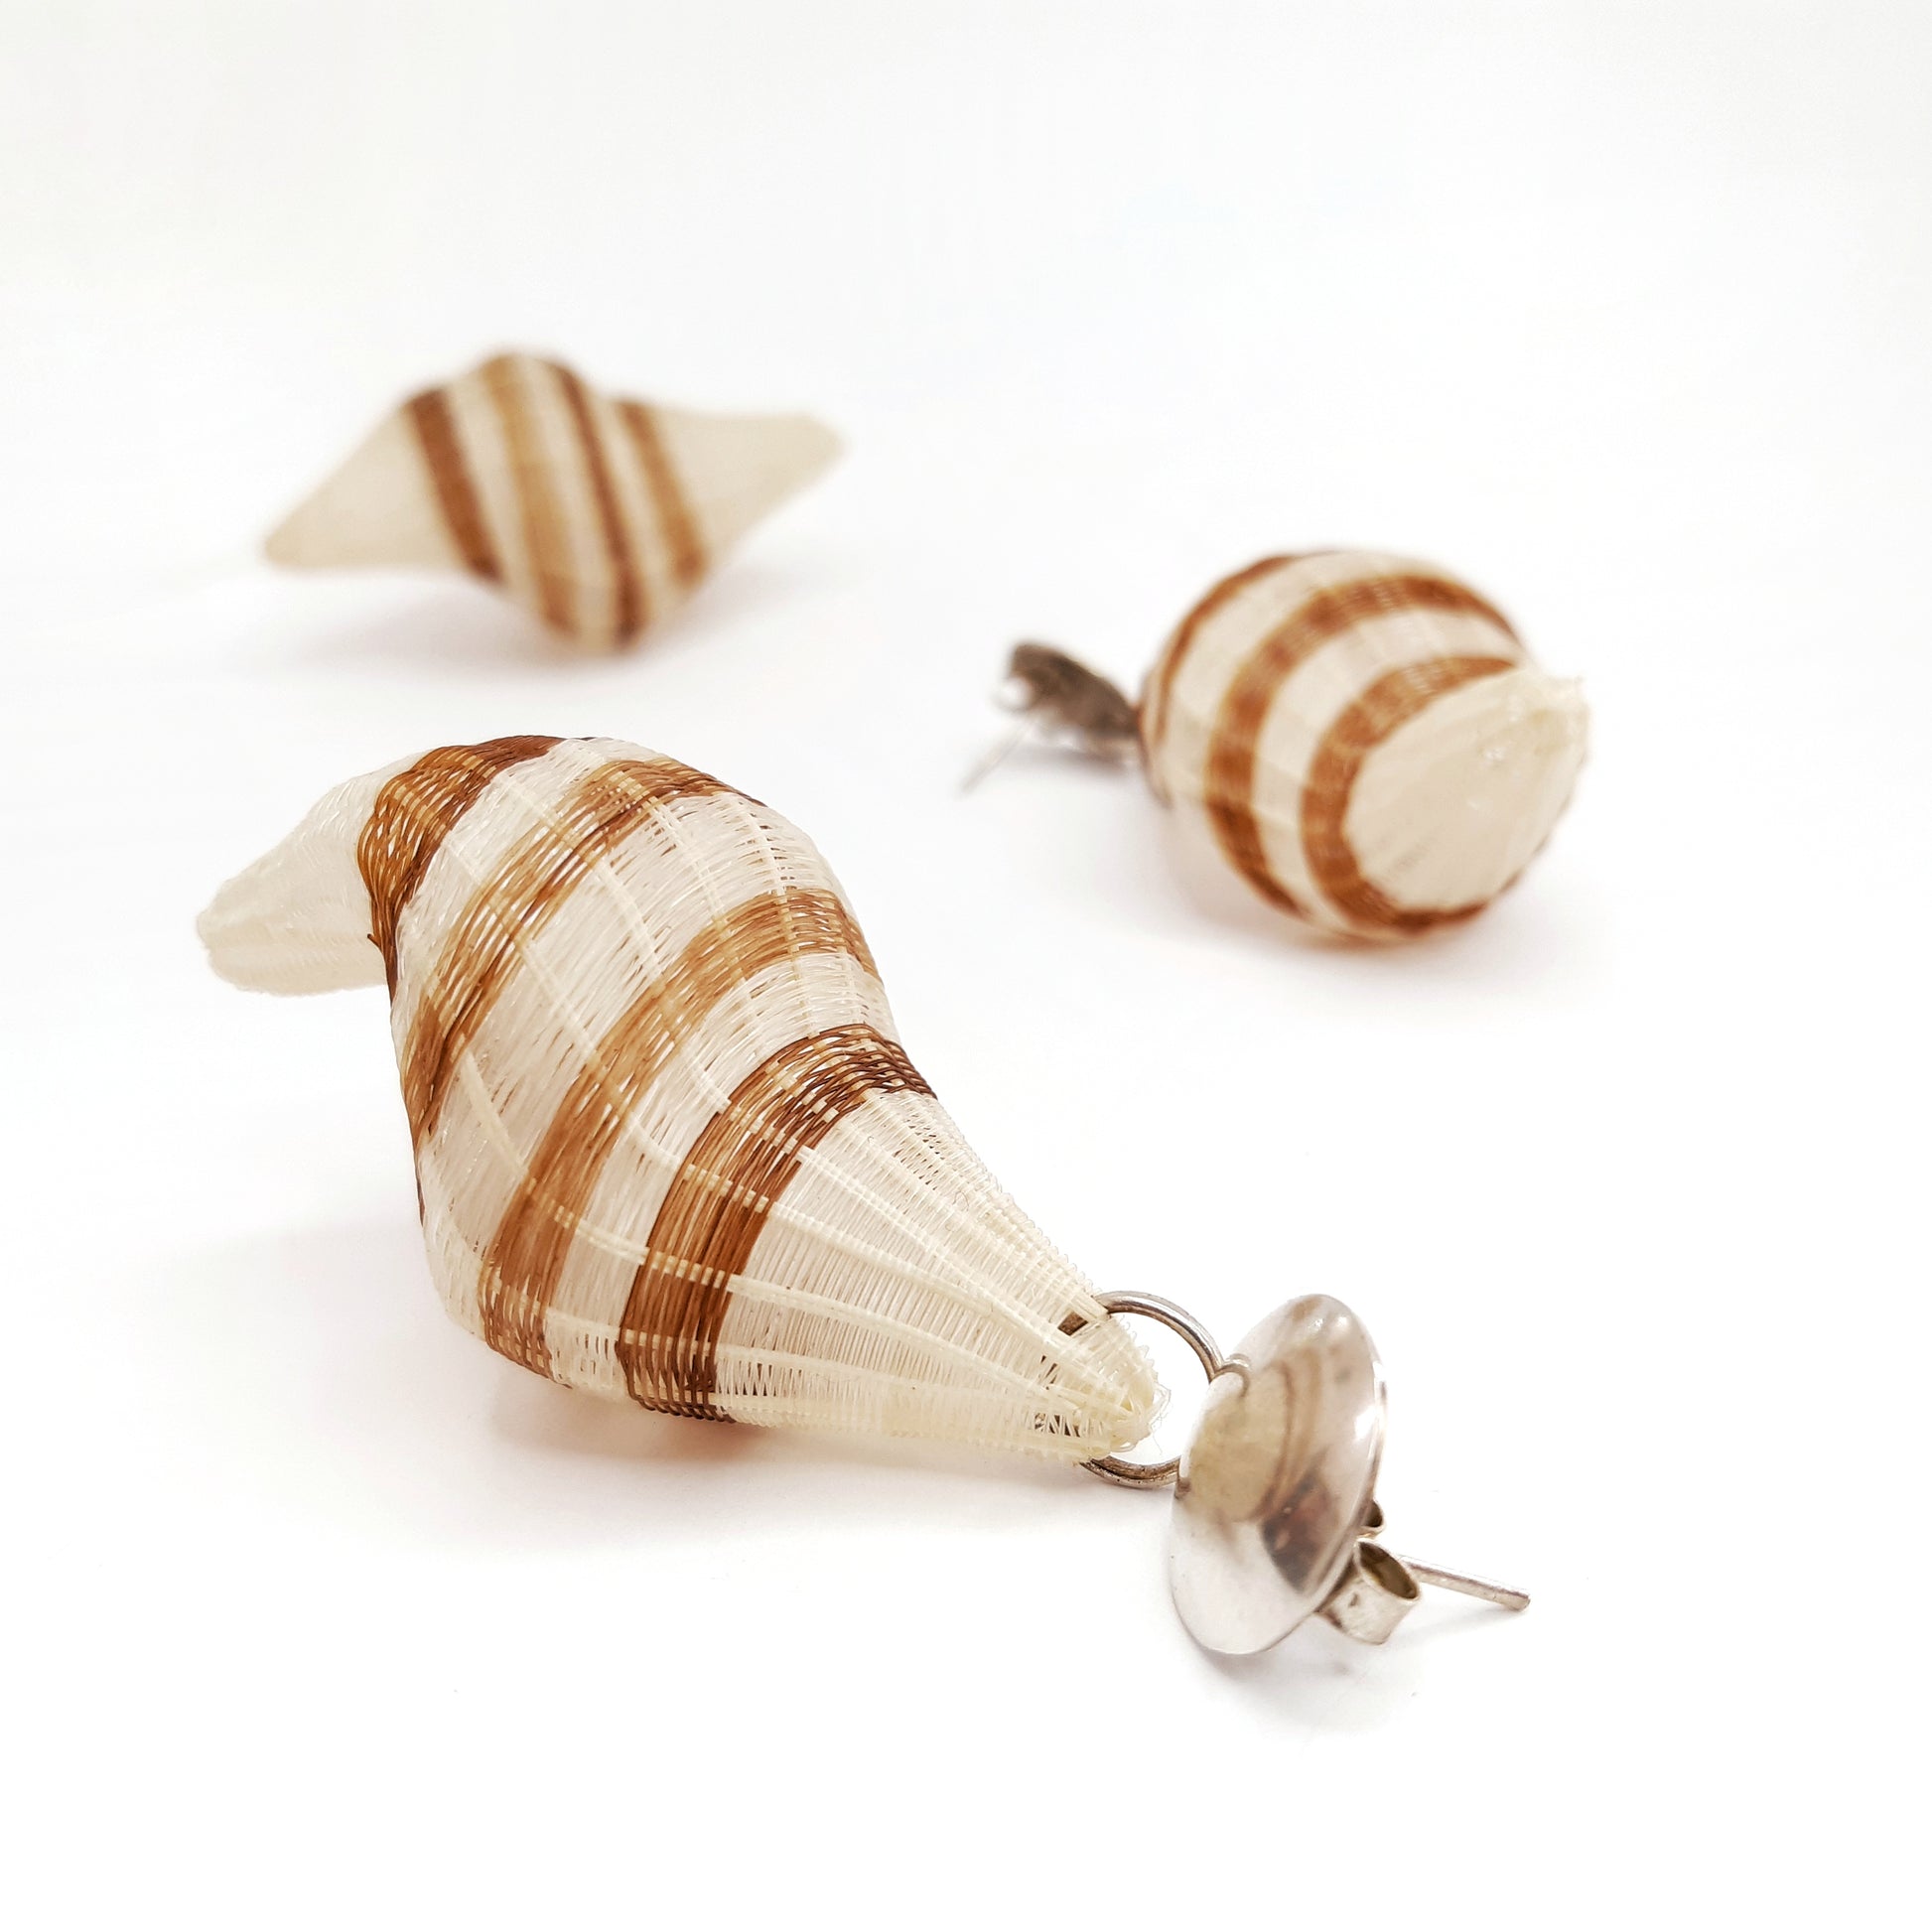 Chile, Rita Soto, White Snail Earrings